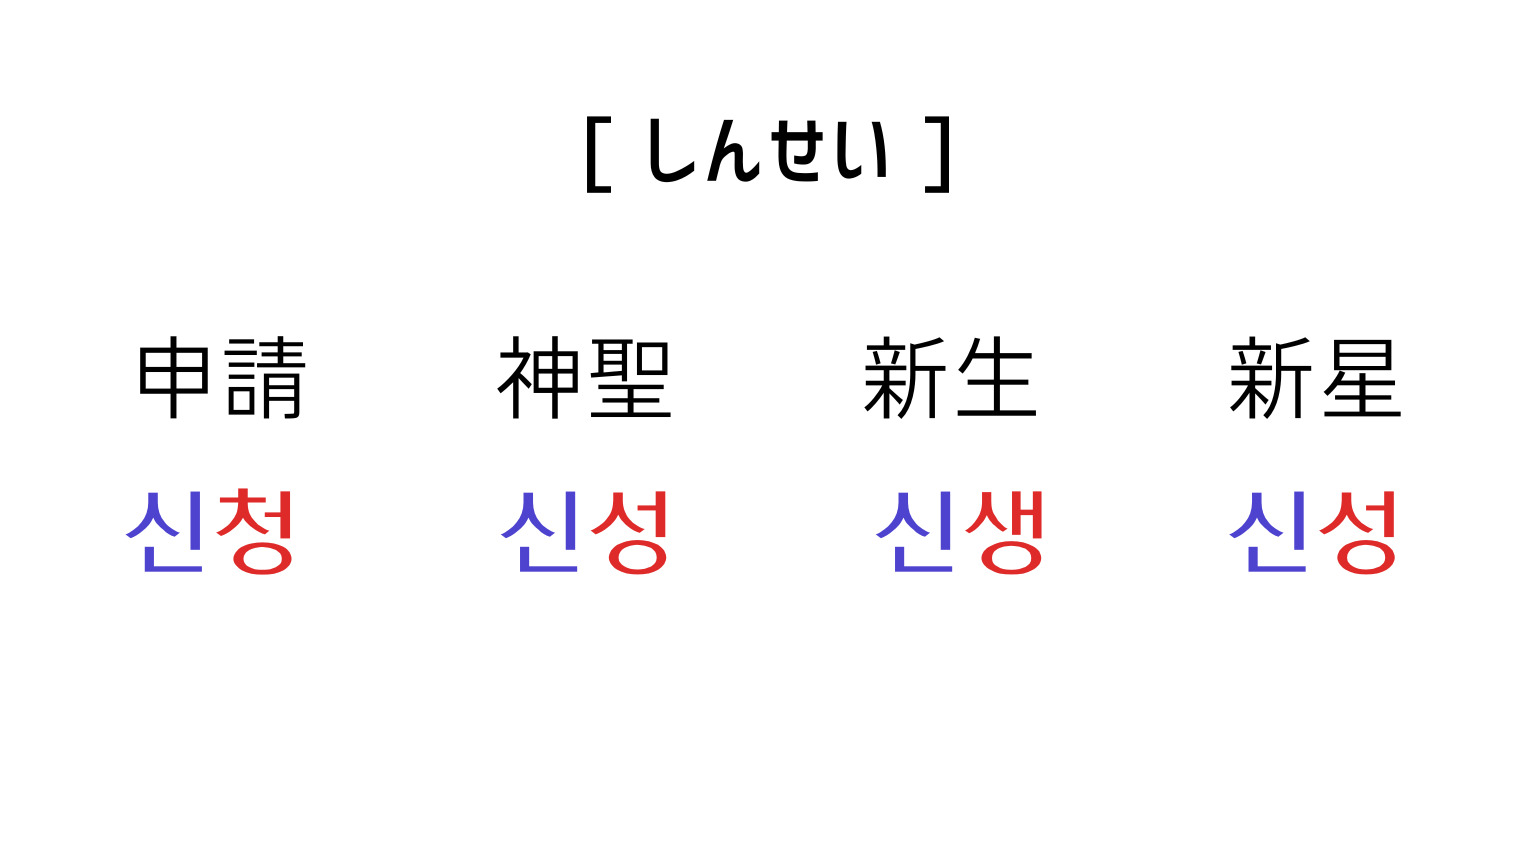 同音異義語[しんせい]の韓国語表現